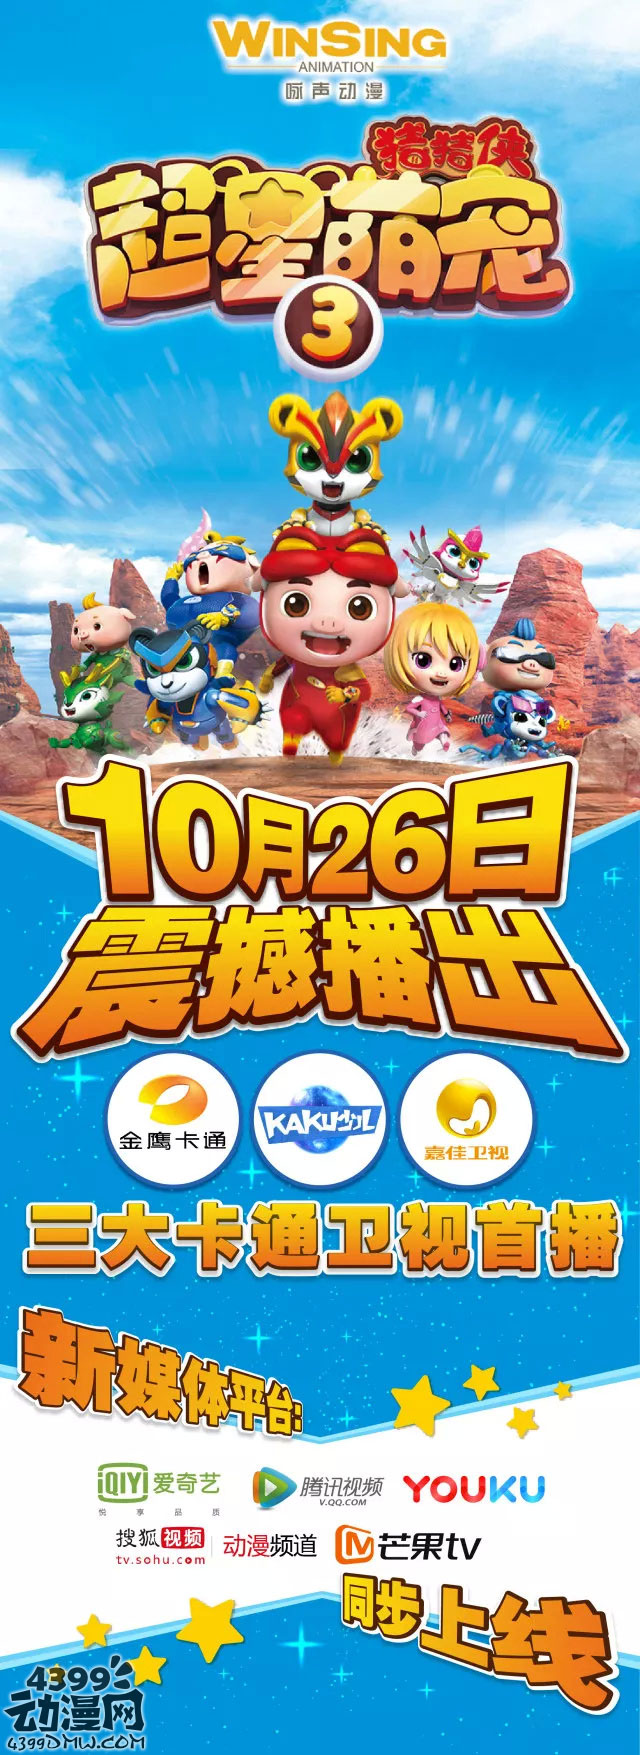 猪猪侠超星萌宠3海报公开 10月26日播出